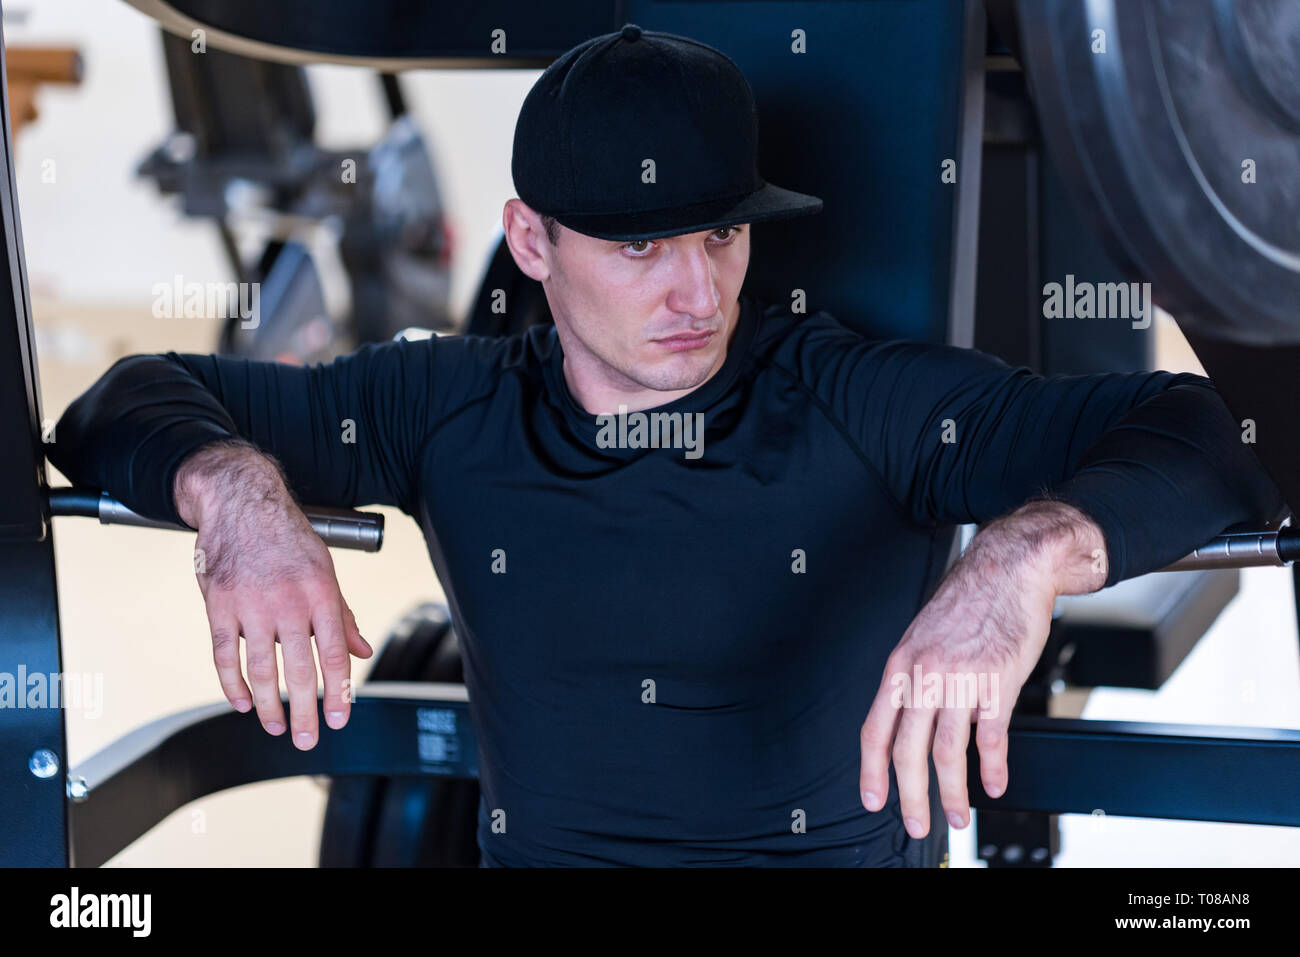 Portrait de l'athlète masculin wearing cap sitting at gym Banque D'Images